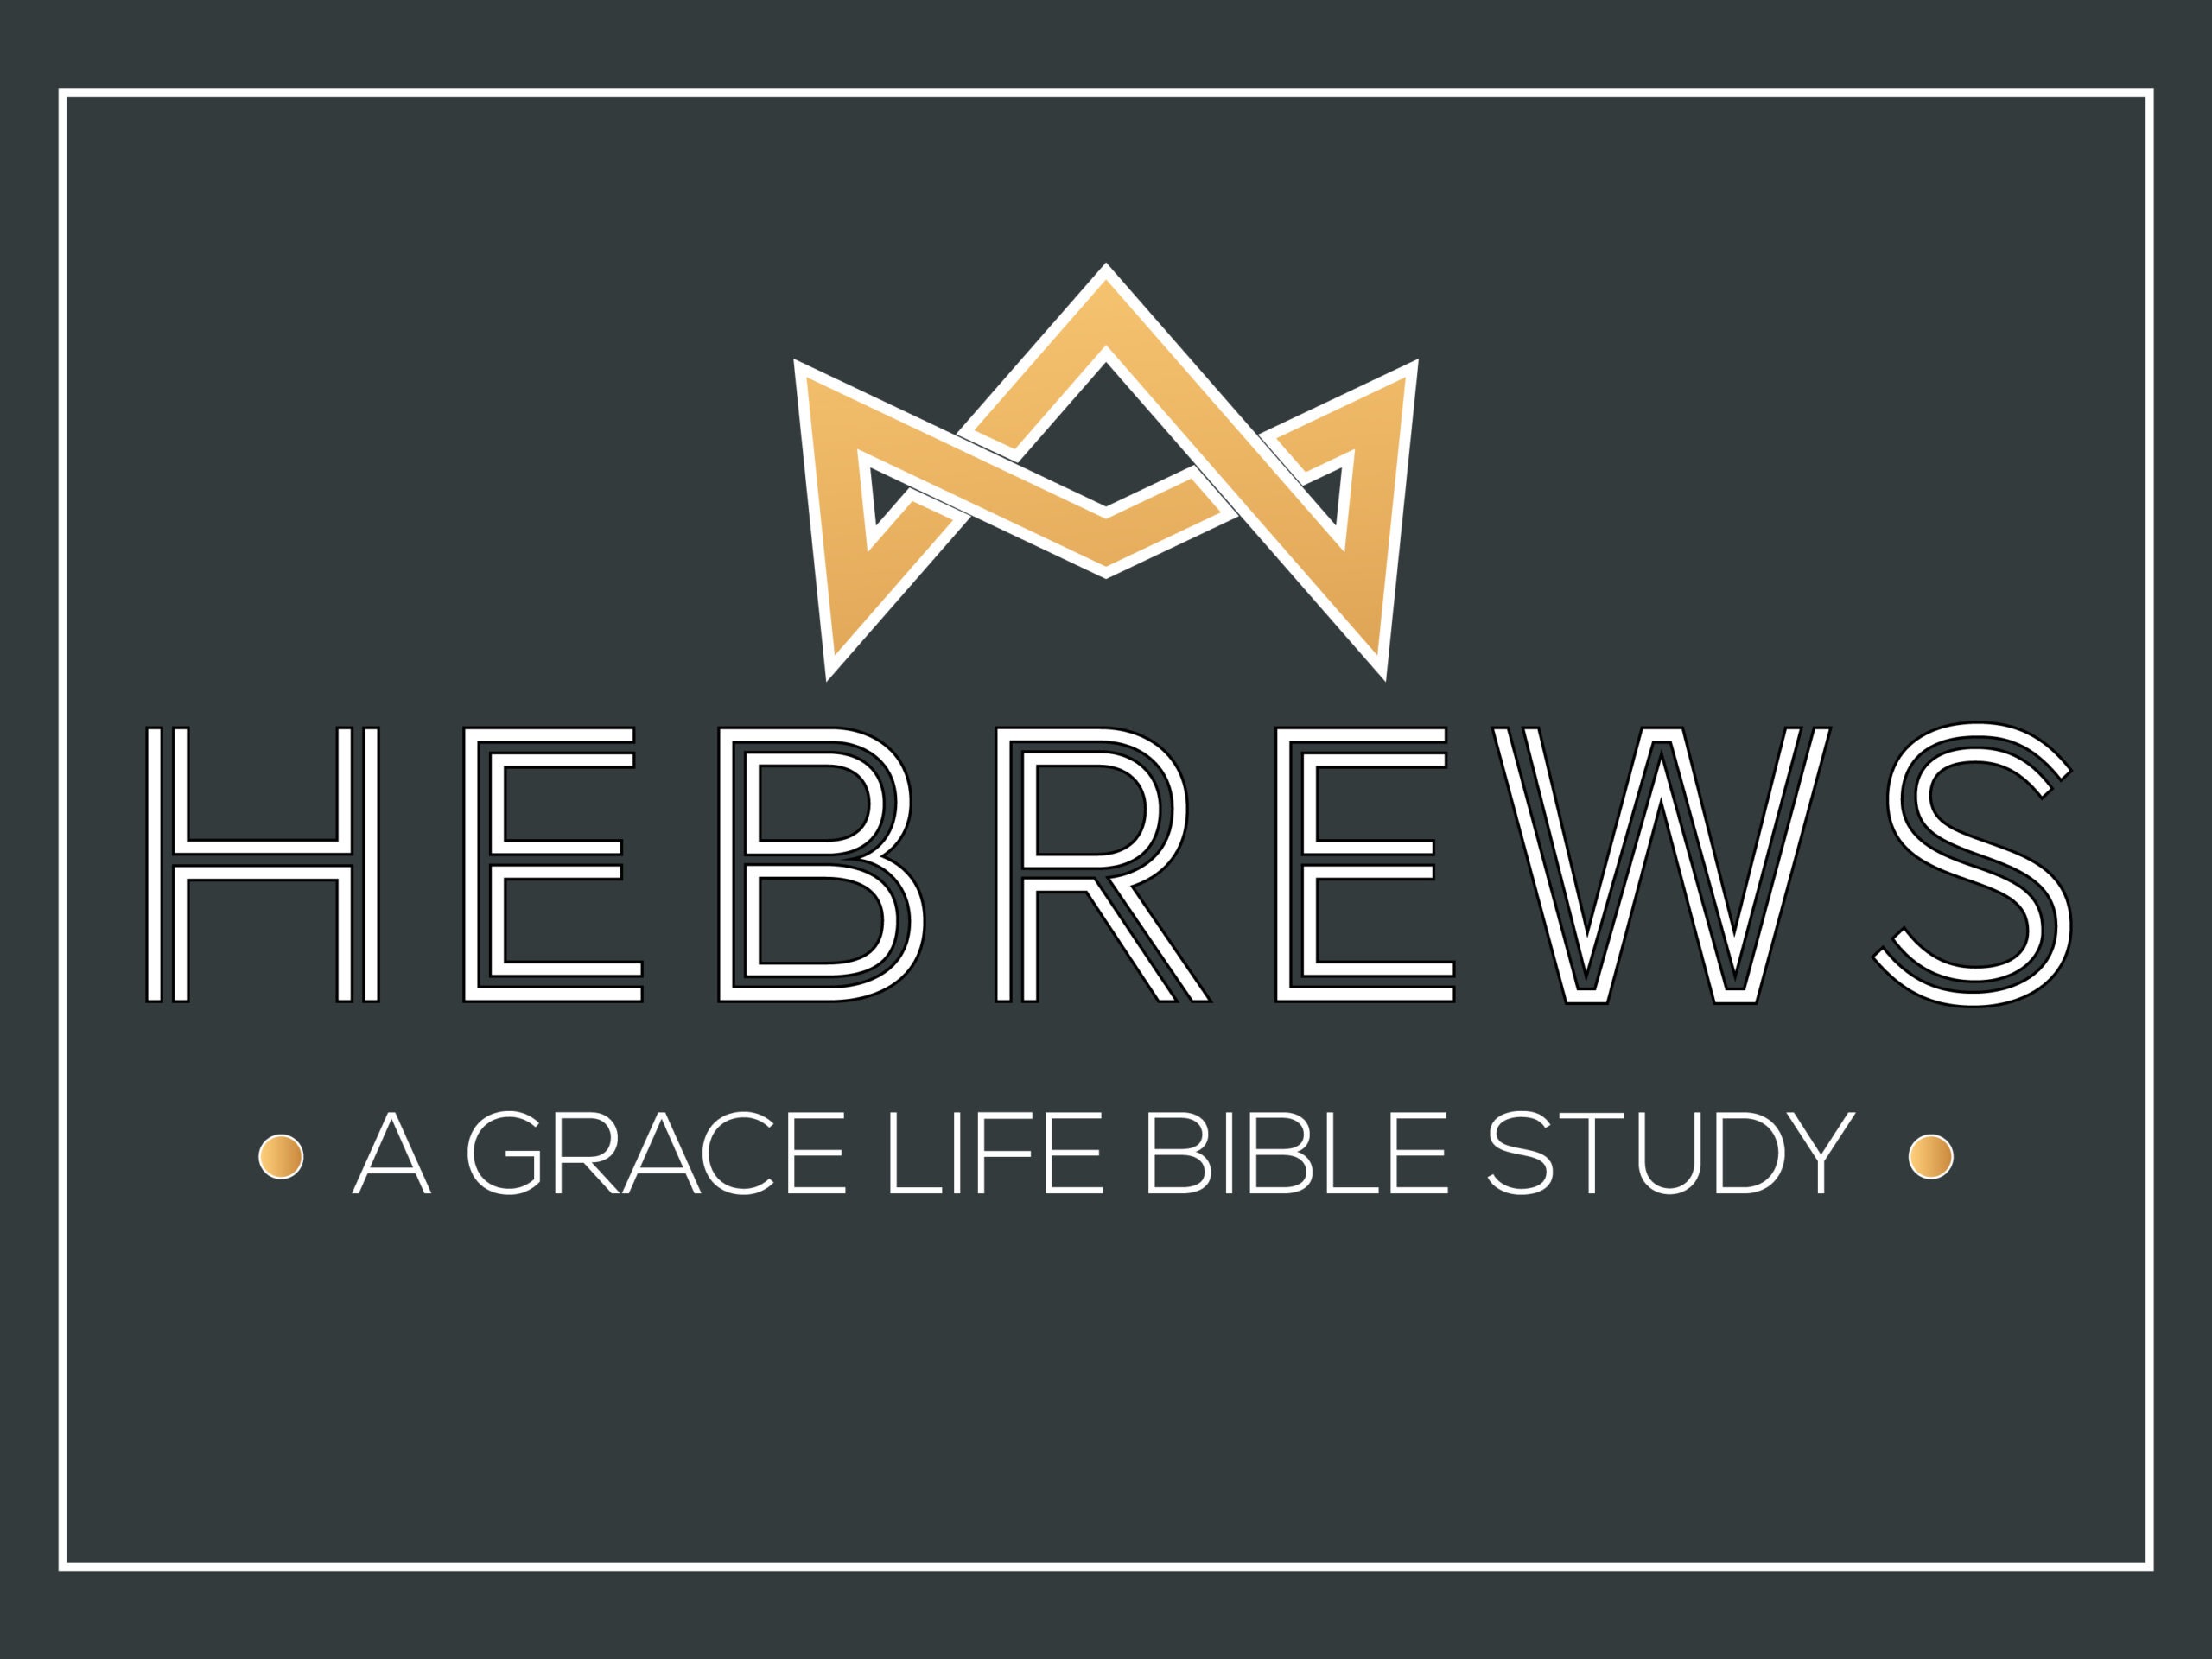 A Study on Hebrews 13:1-6